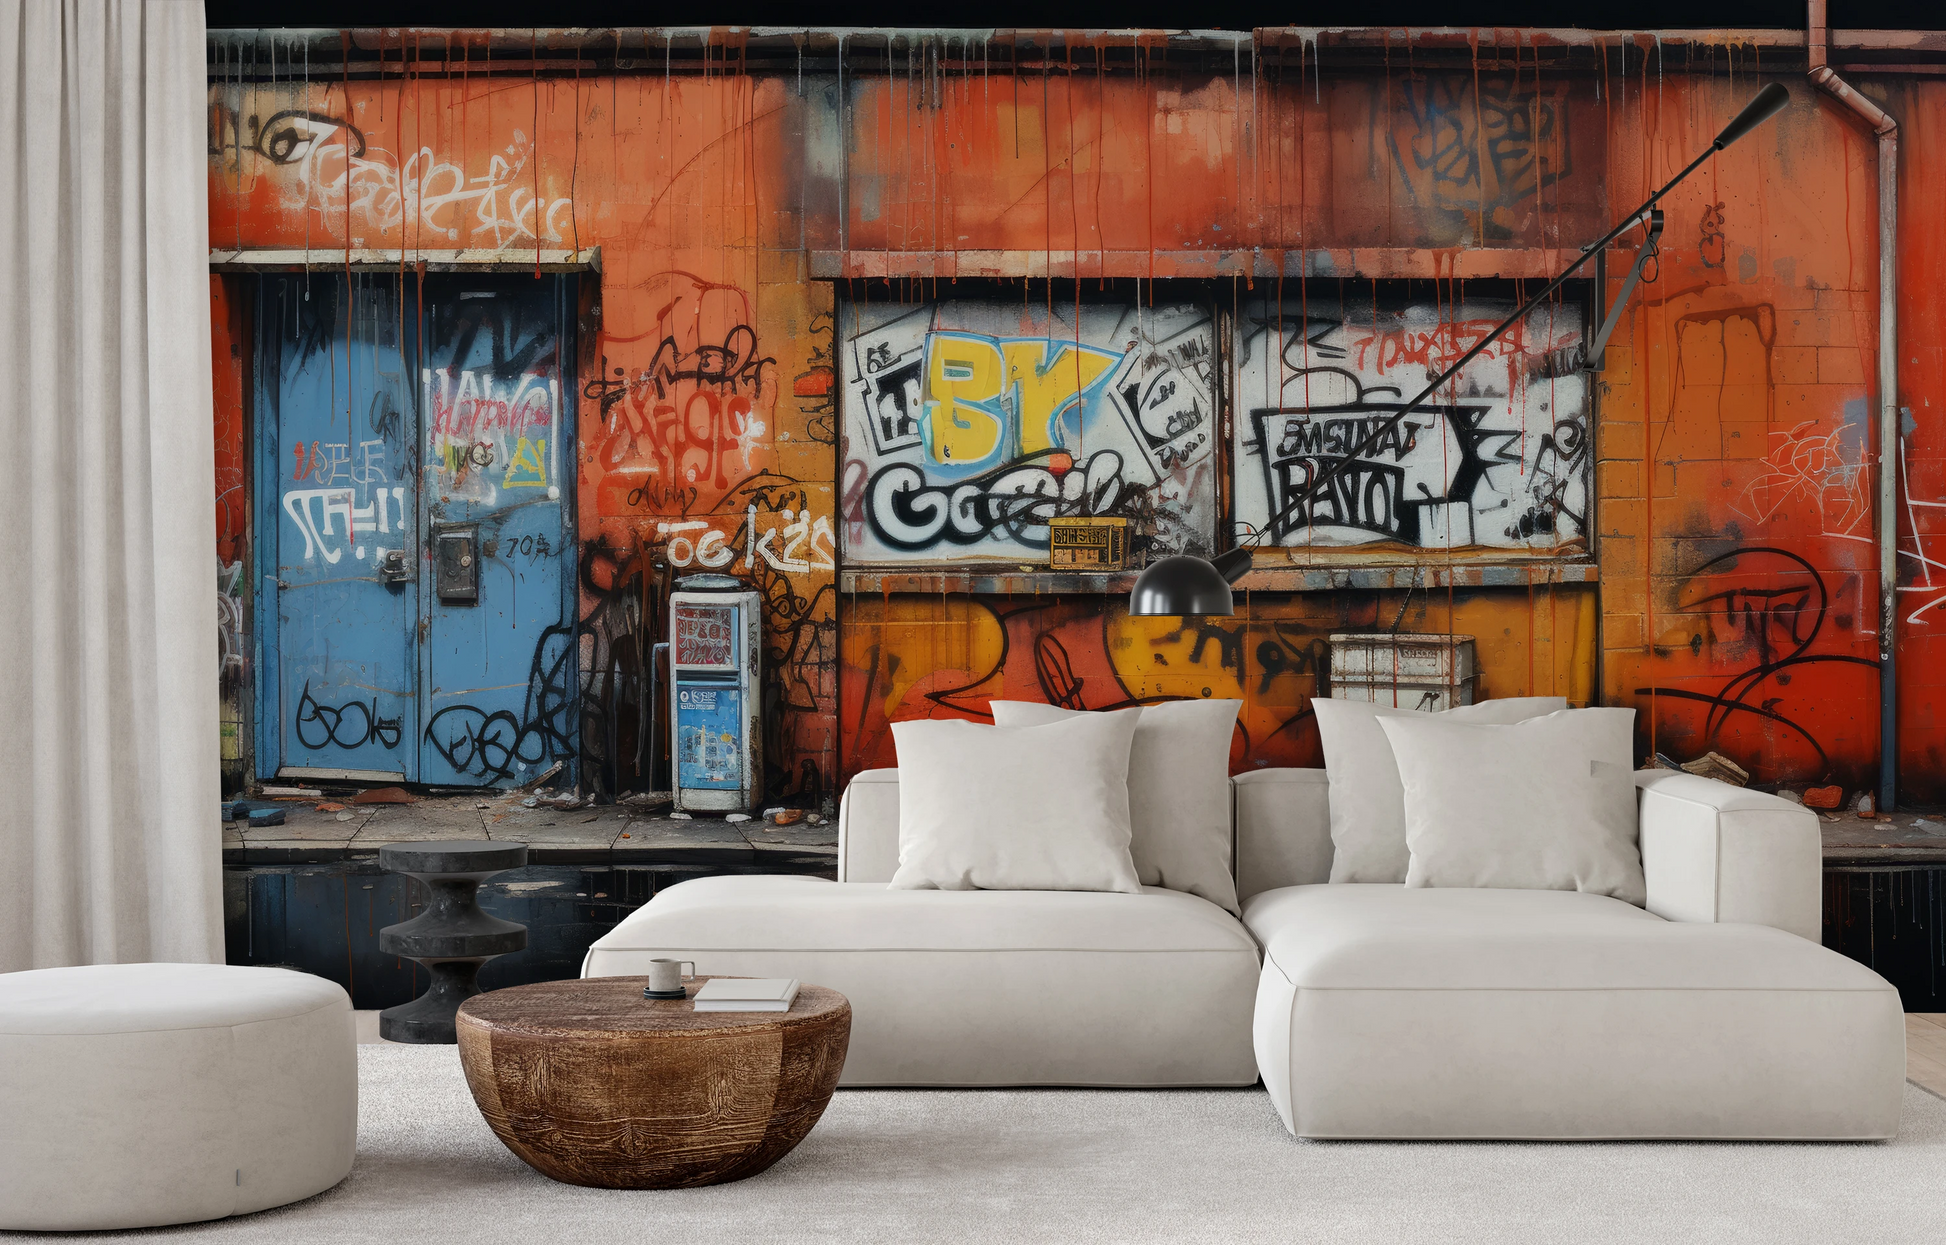 Fototapeta malowana o nazwie Graffiti Panorama pokazana w aranżacji wnętrza.